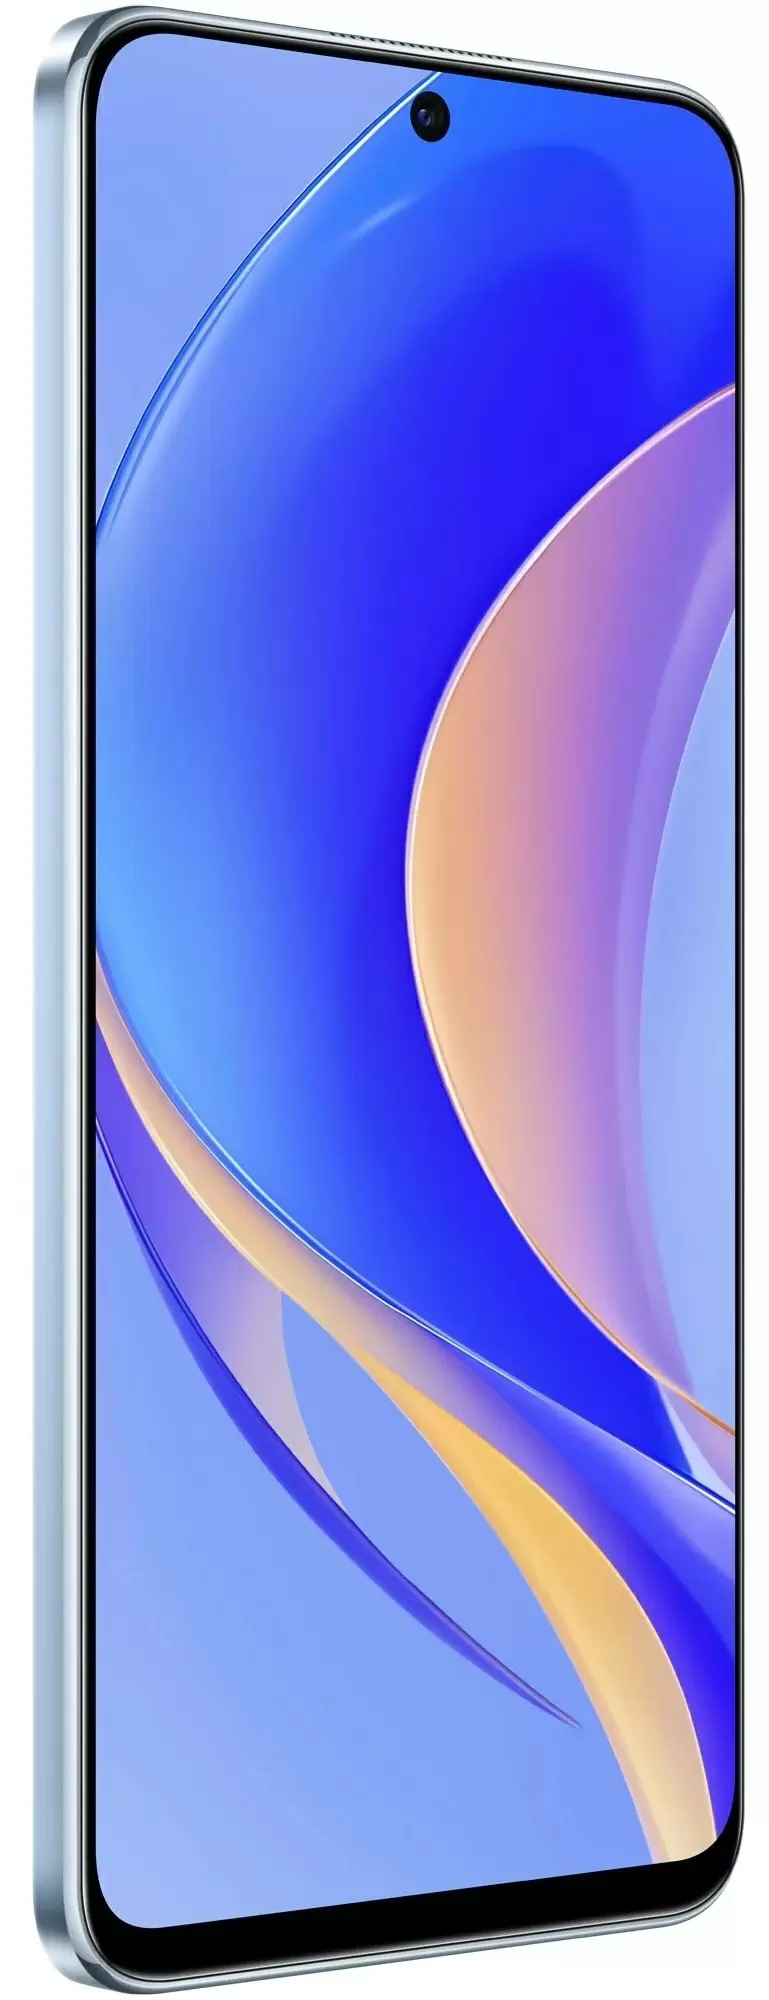 Smartphone Huawei Nova Y90 6/128GB, albastru deschis